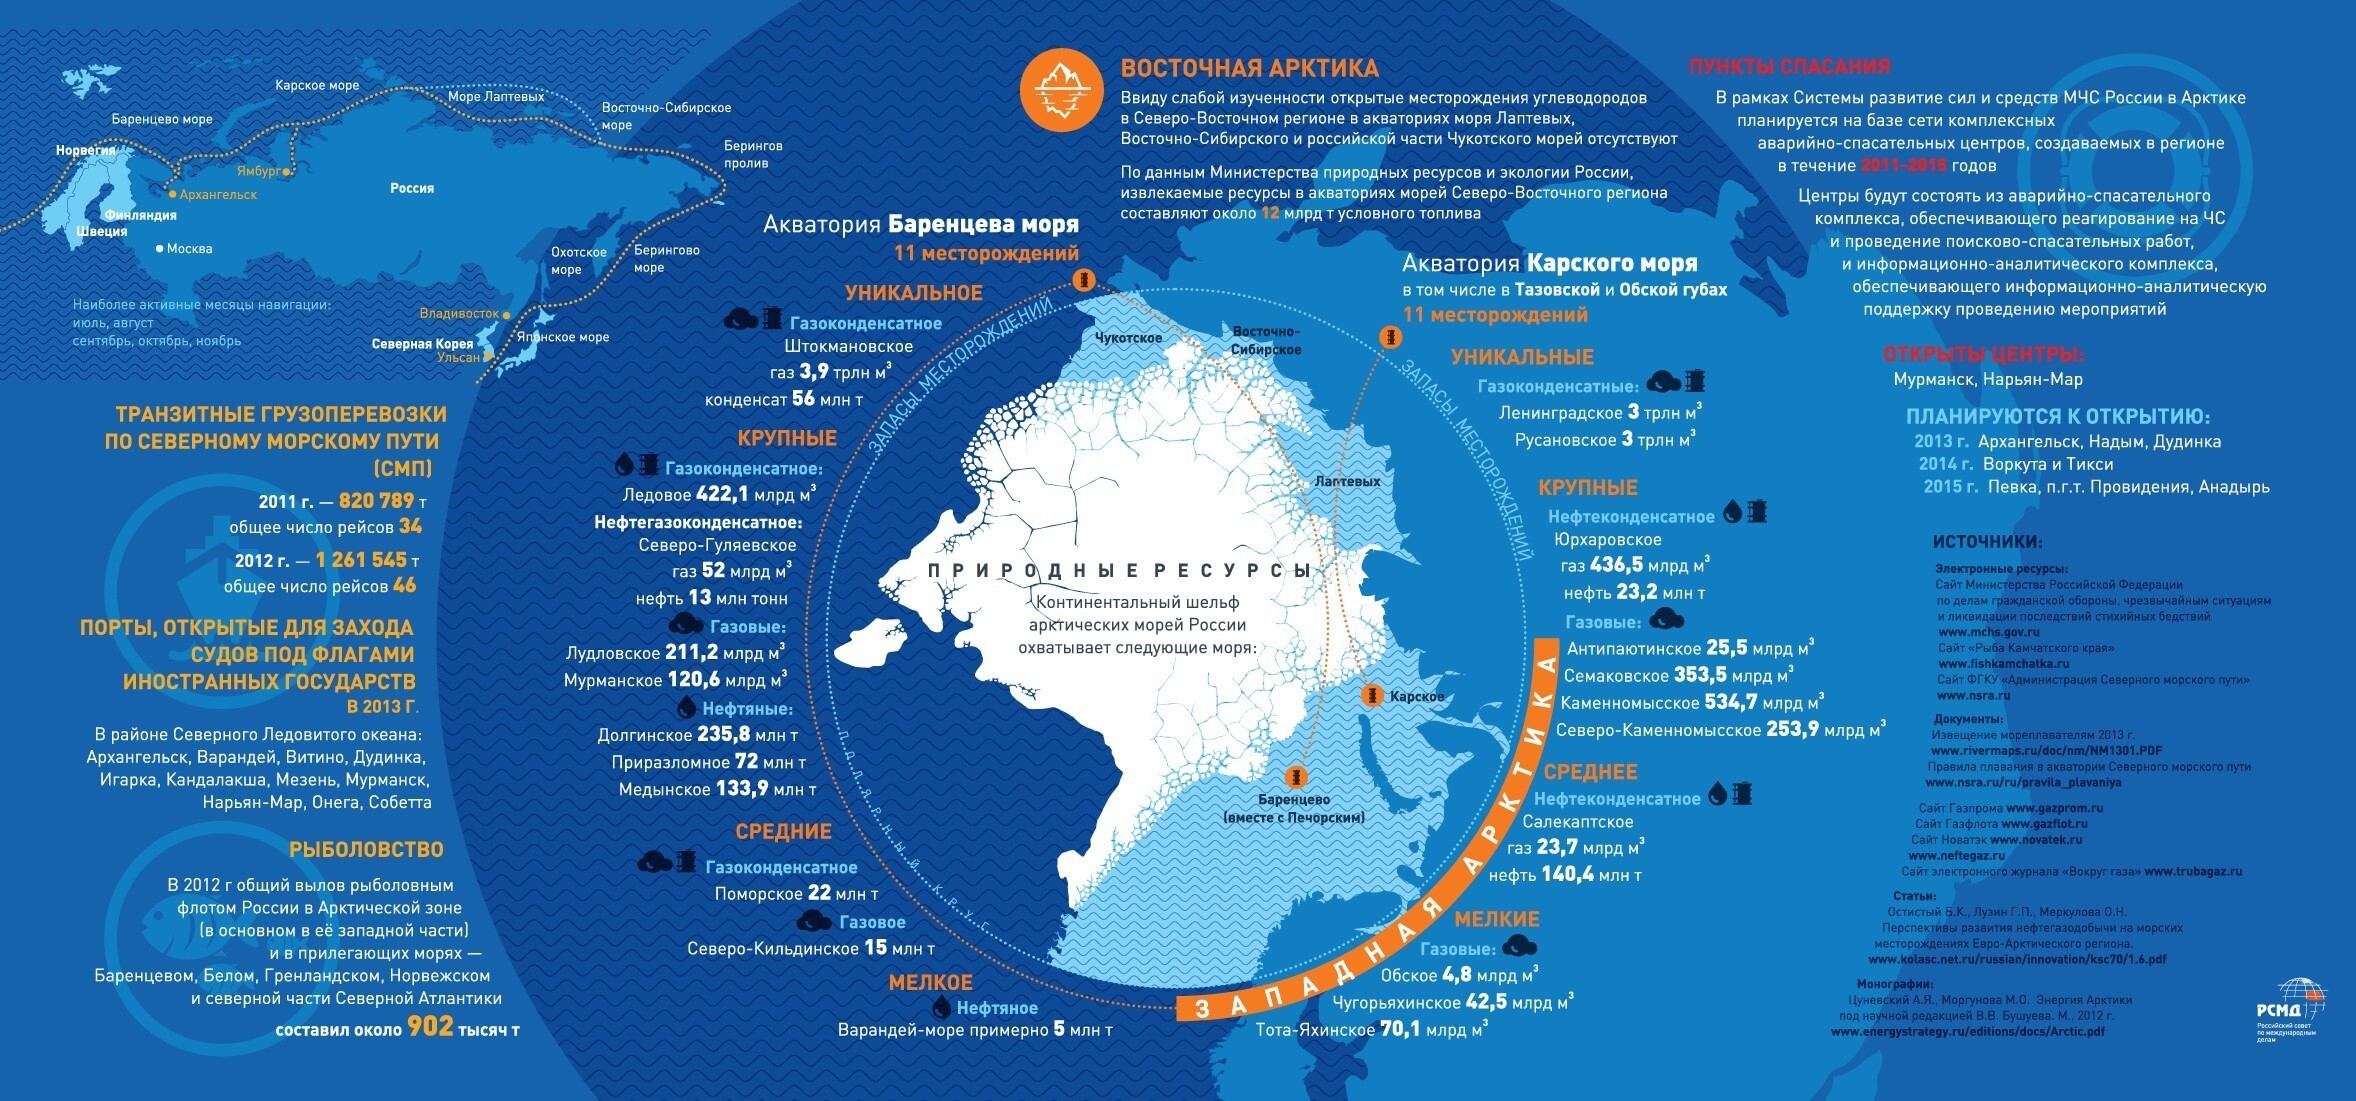 От южных морей до края москвы. Арктика инфографика. Арктическая зона США. Российская Арктика карта. Освоение Арктики инфографика.